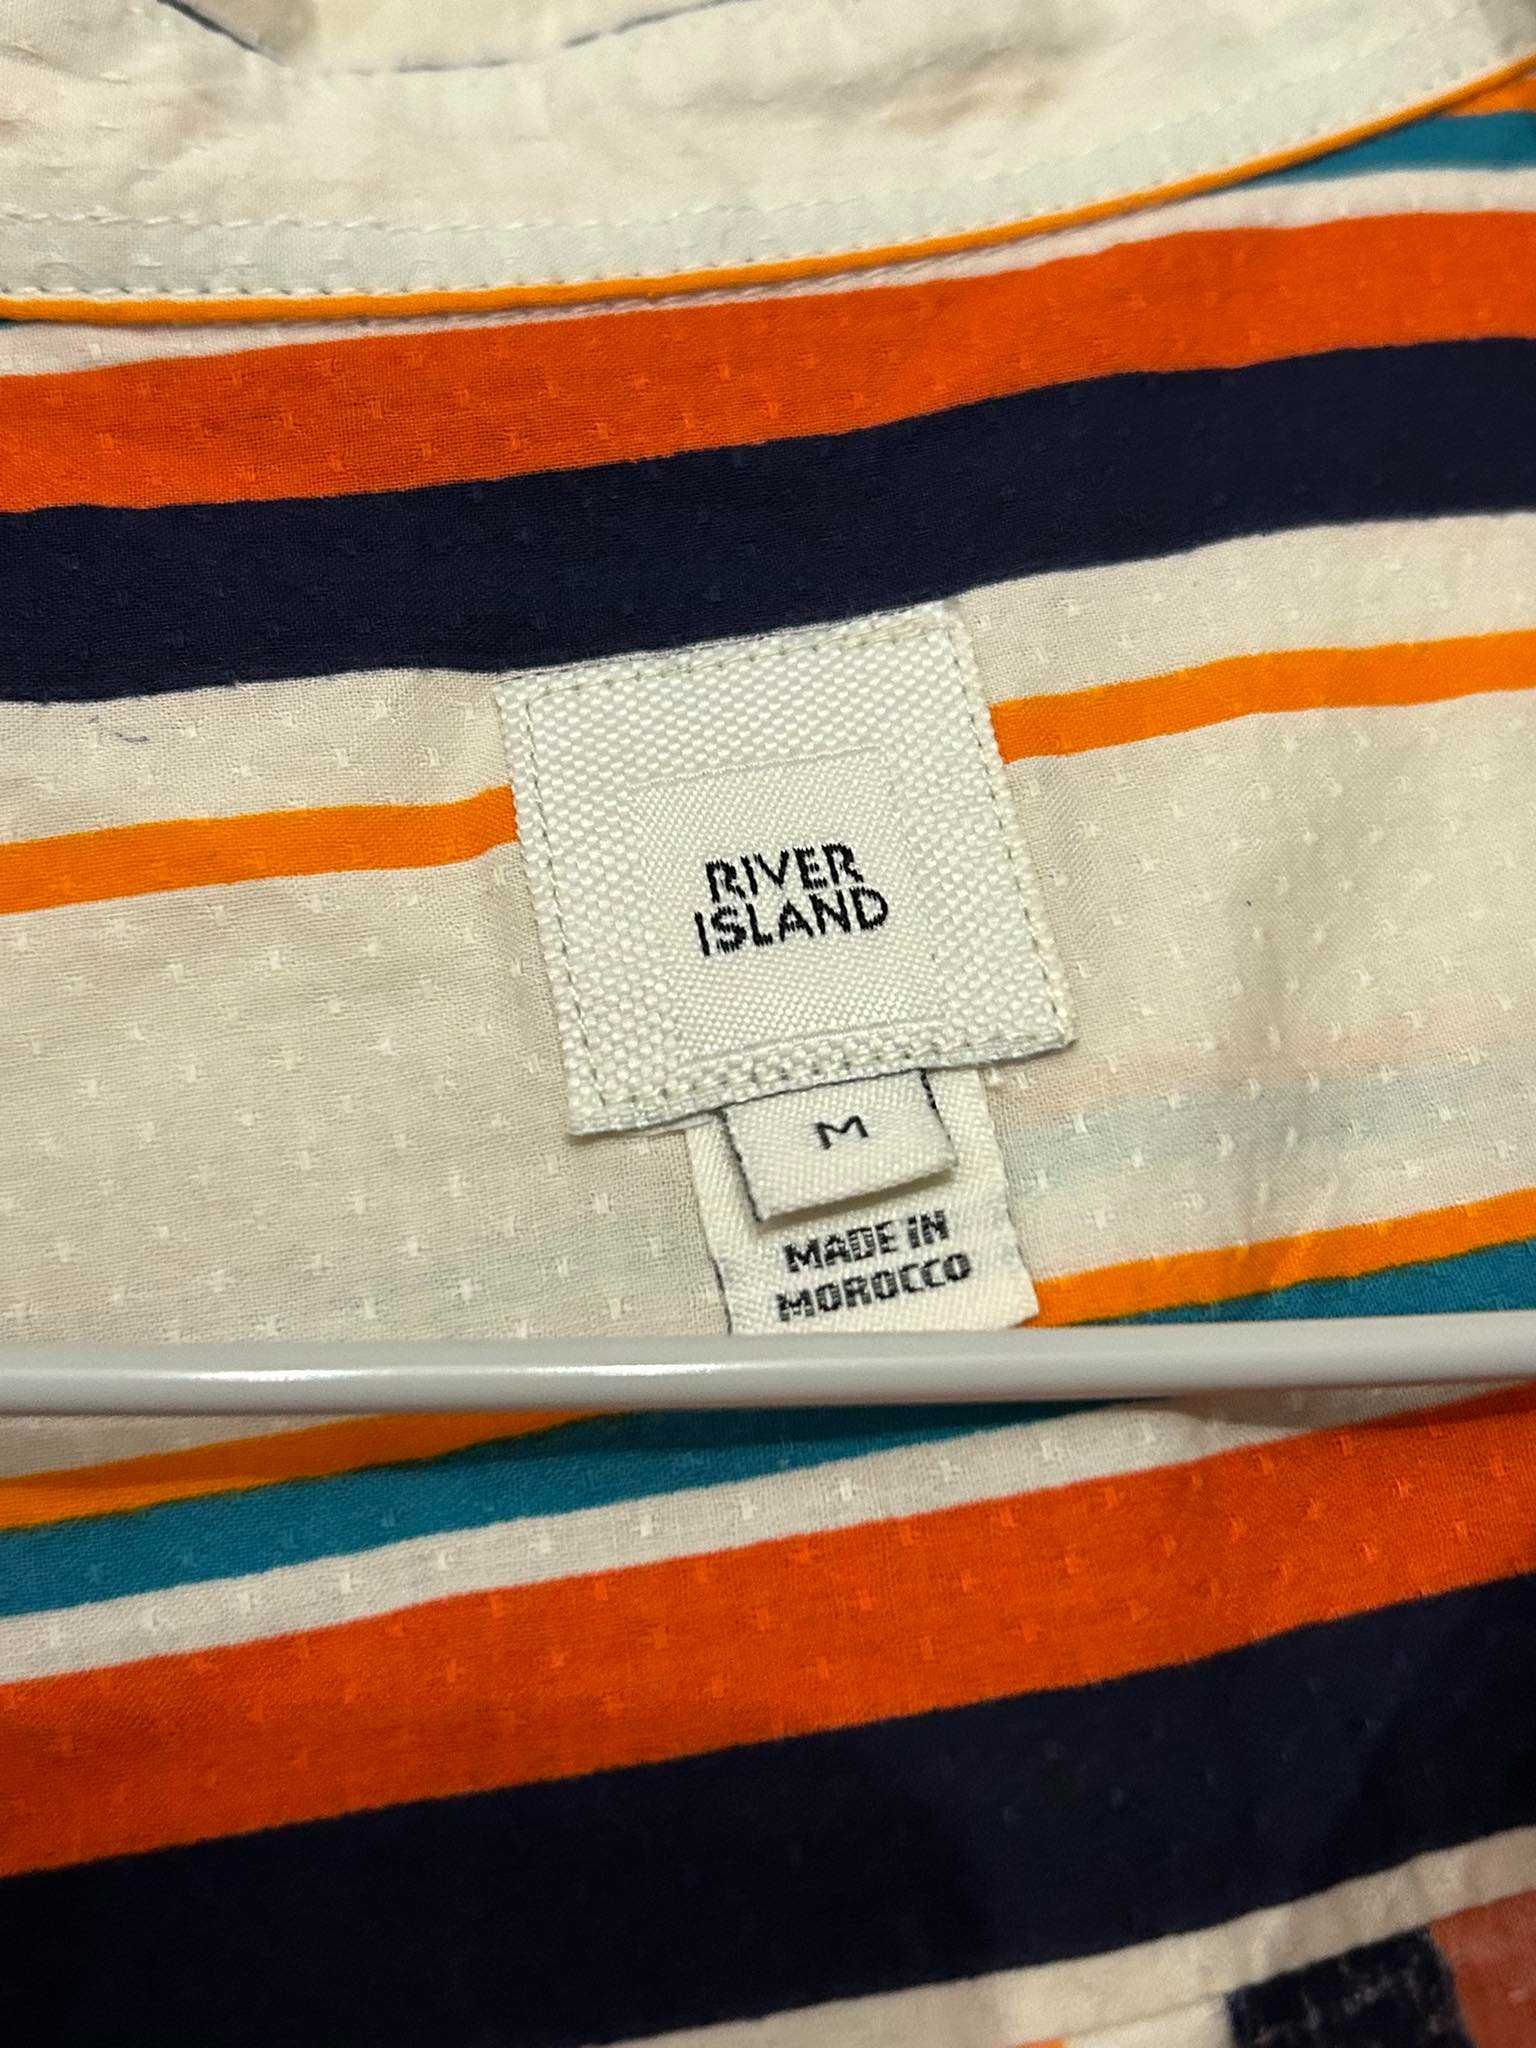 River Island koszula męska rozmiar M 100% bawełna.